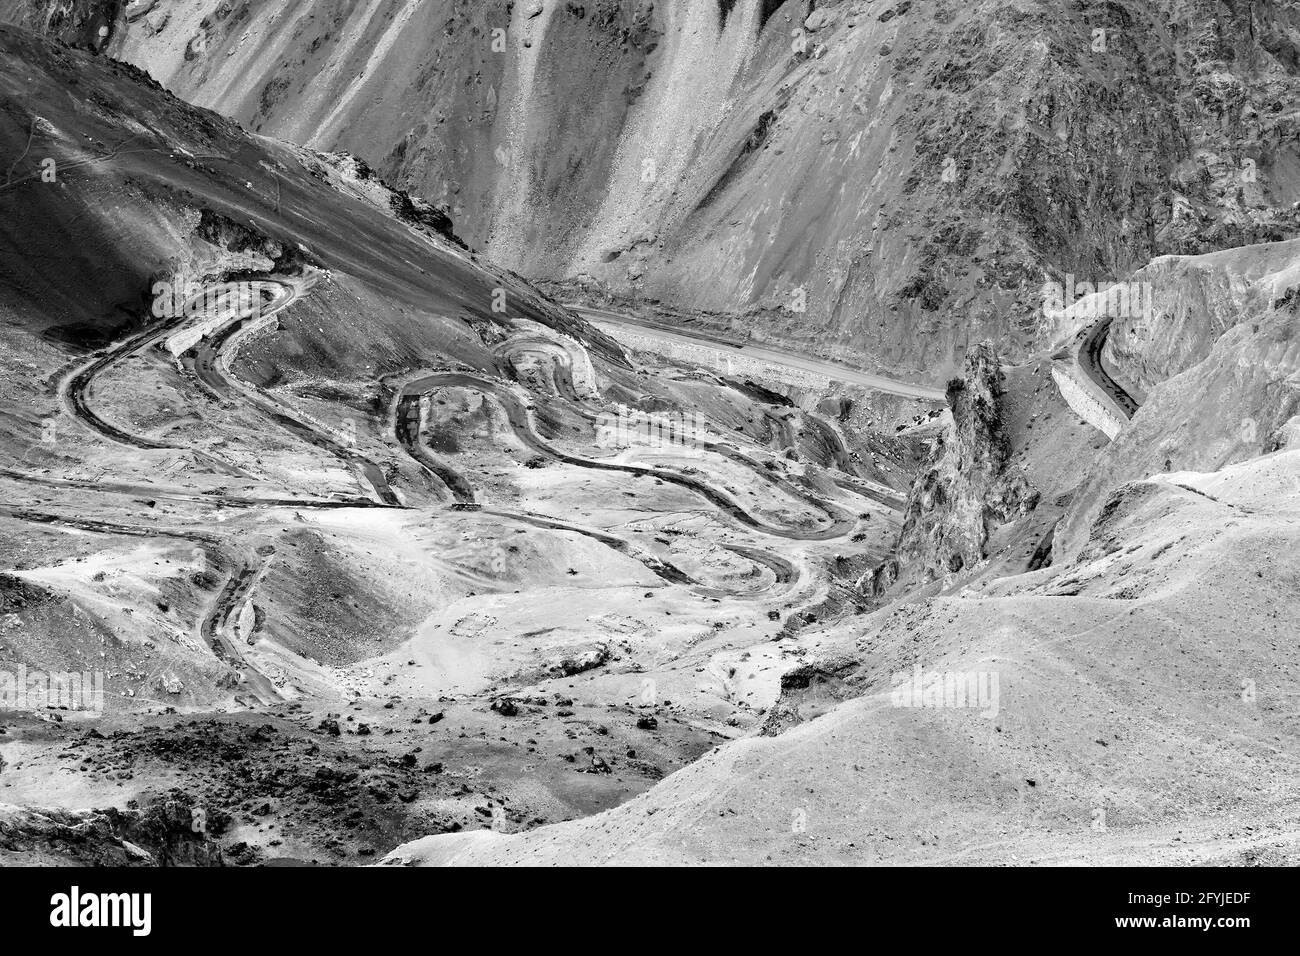 Vue aérienne de la route Zigzag - connue sous le nom de route jilabi sur l'ancienne route de Leh Srinagar, Ladakh, Jammu et Cachemire, Inde.Noir et blanc. Banque D'Images